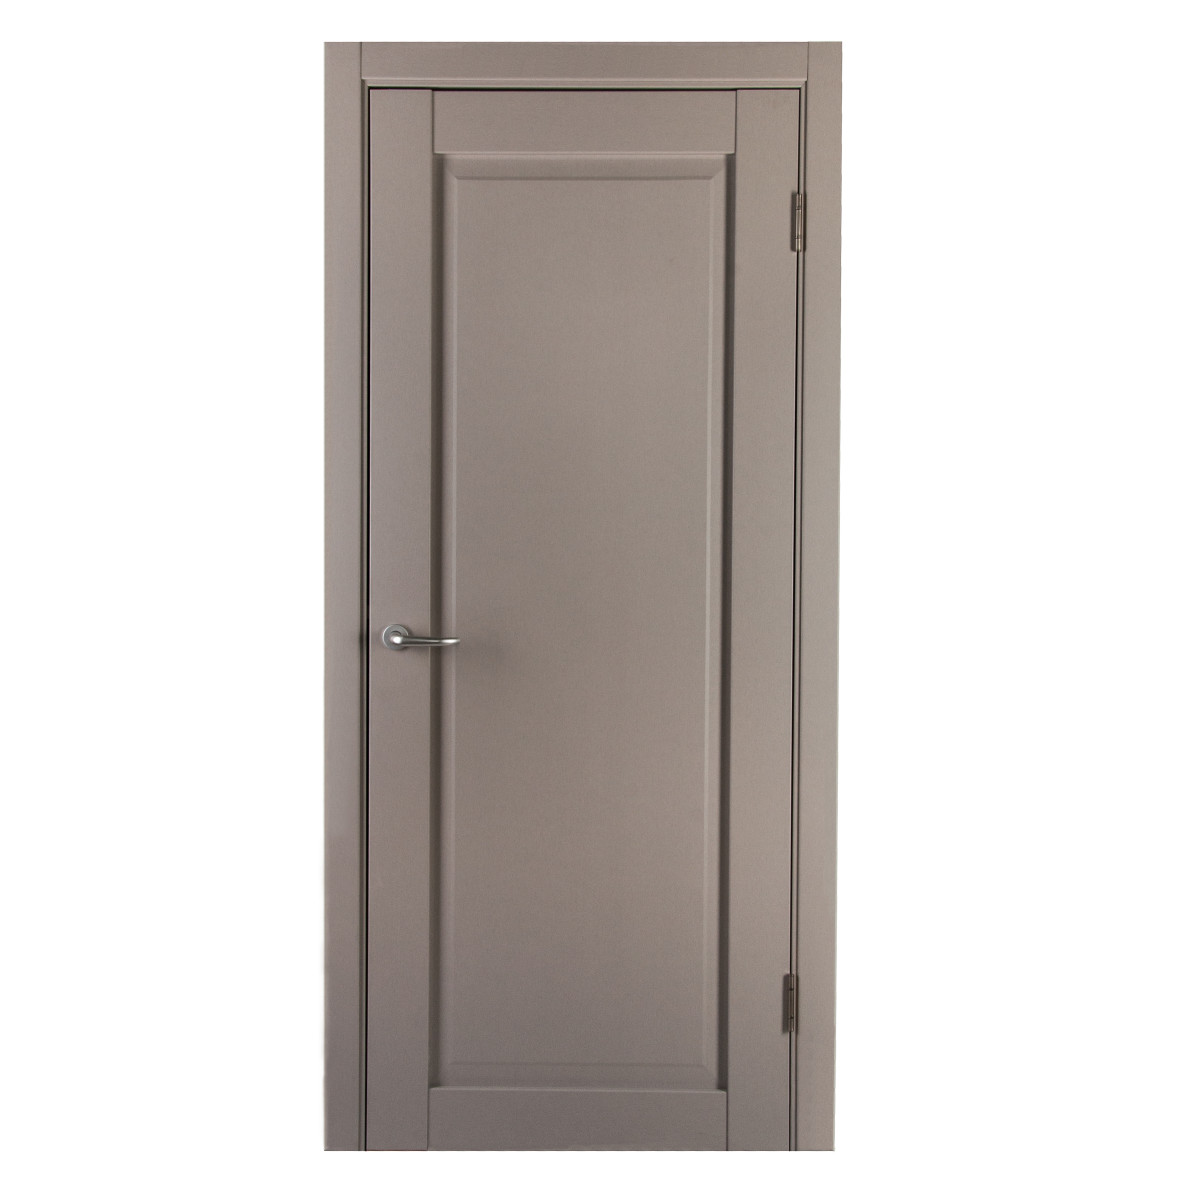 Дверь межкомнатная с фурнитурой Пьемонт 70х200 см, Hardflex, цвет платина светлая